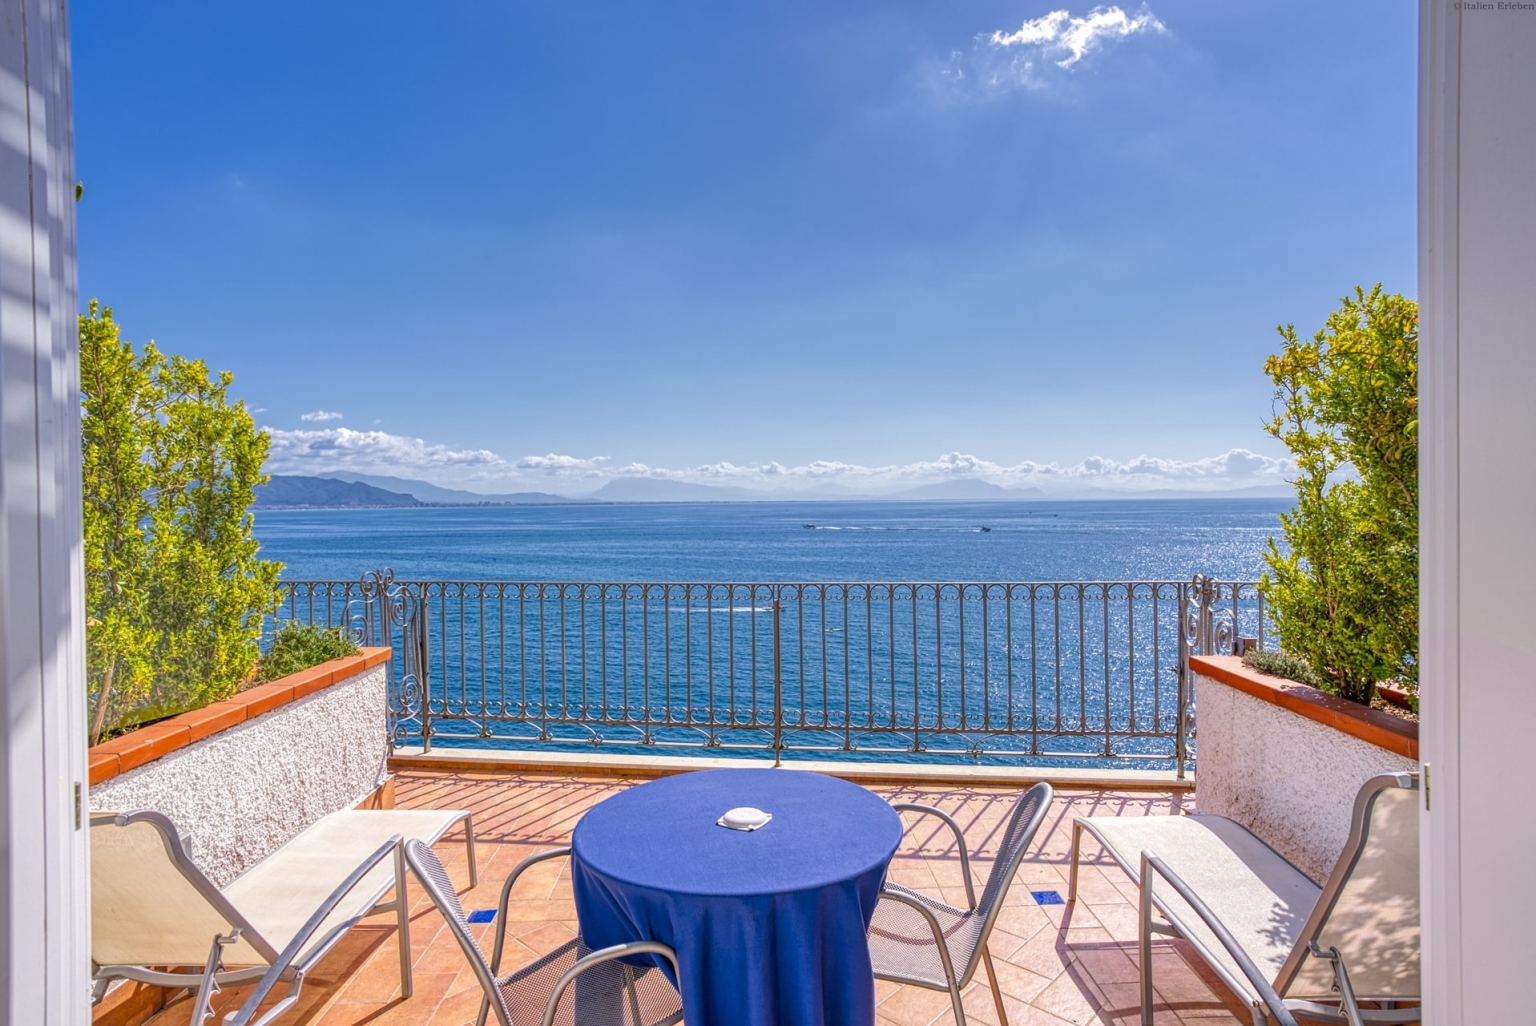 Kampanien Hotel Cetus Cetara Amalfiküste direkt am Meer Panoramalage Meerblick Zimmer Terrasse